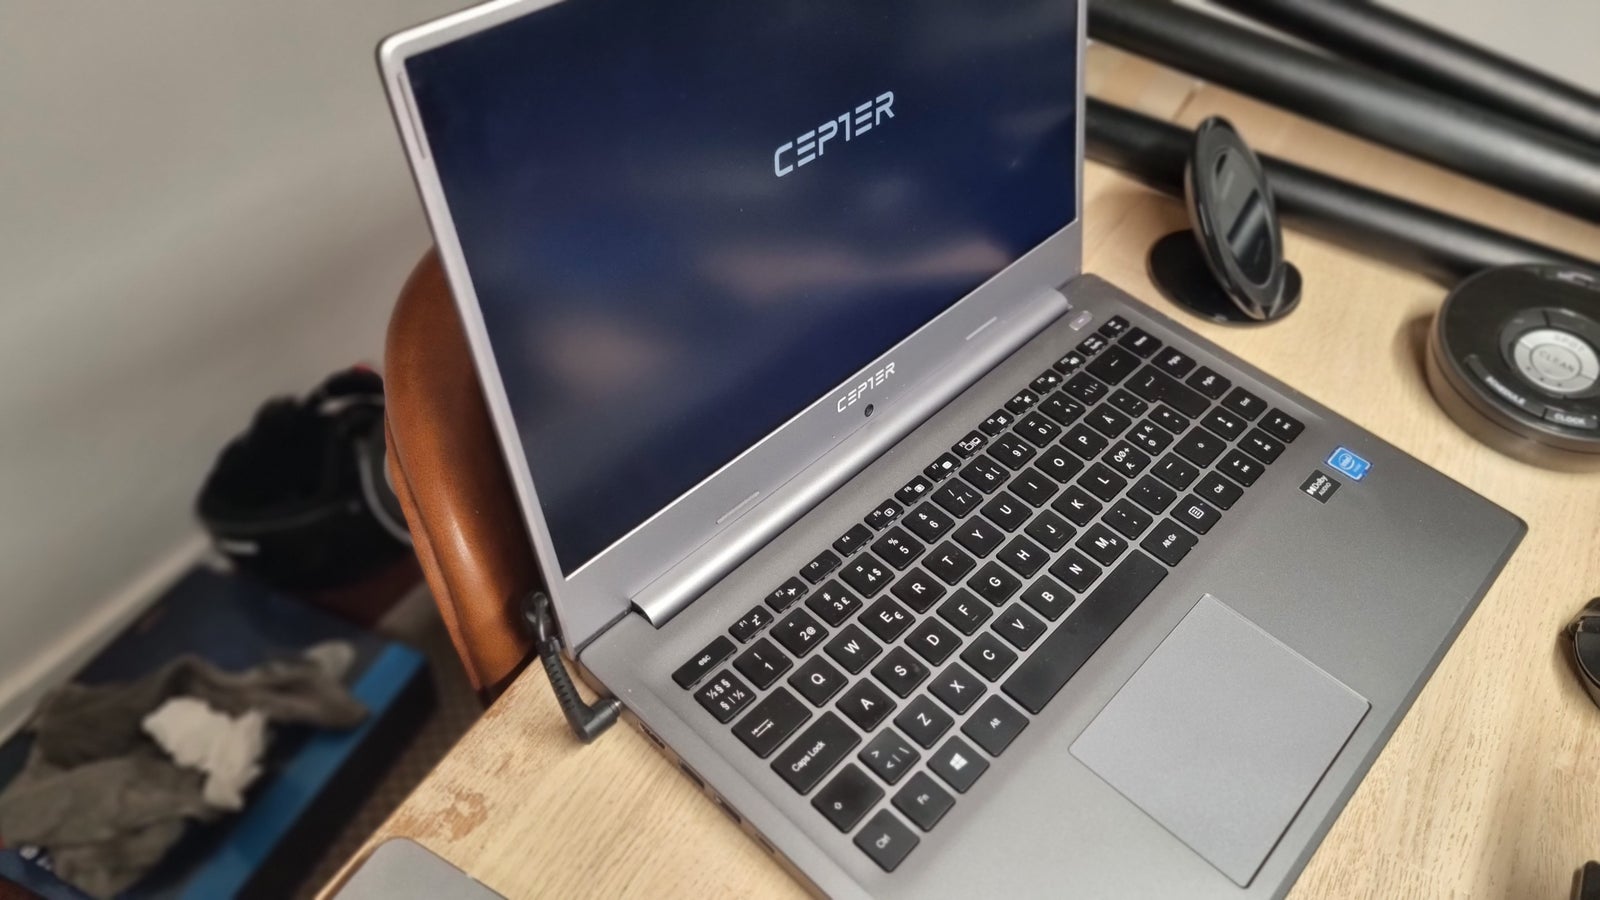 Andet mærke Cepter Dreambook bærbar PC med en 15,6